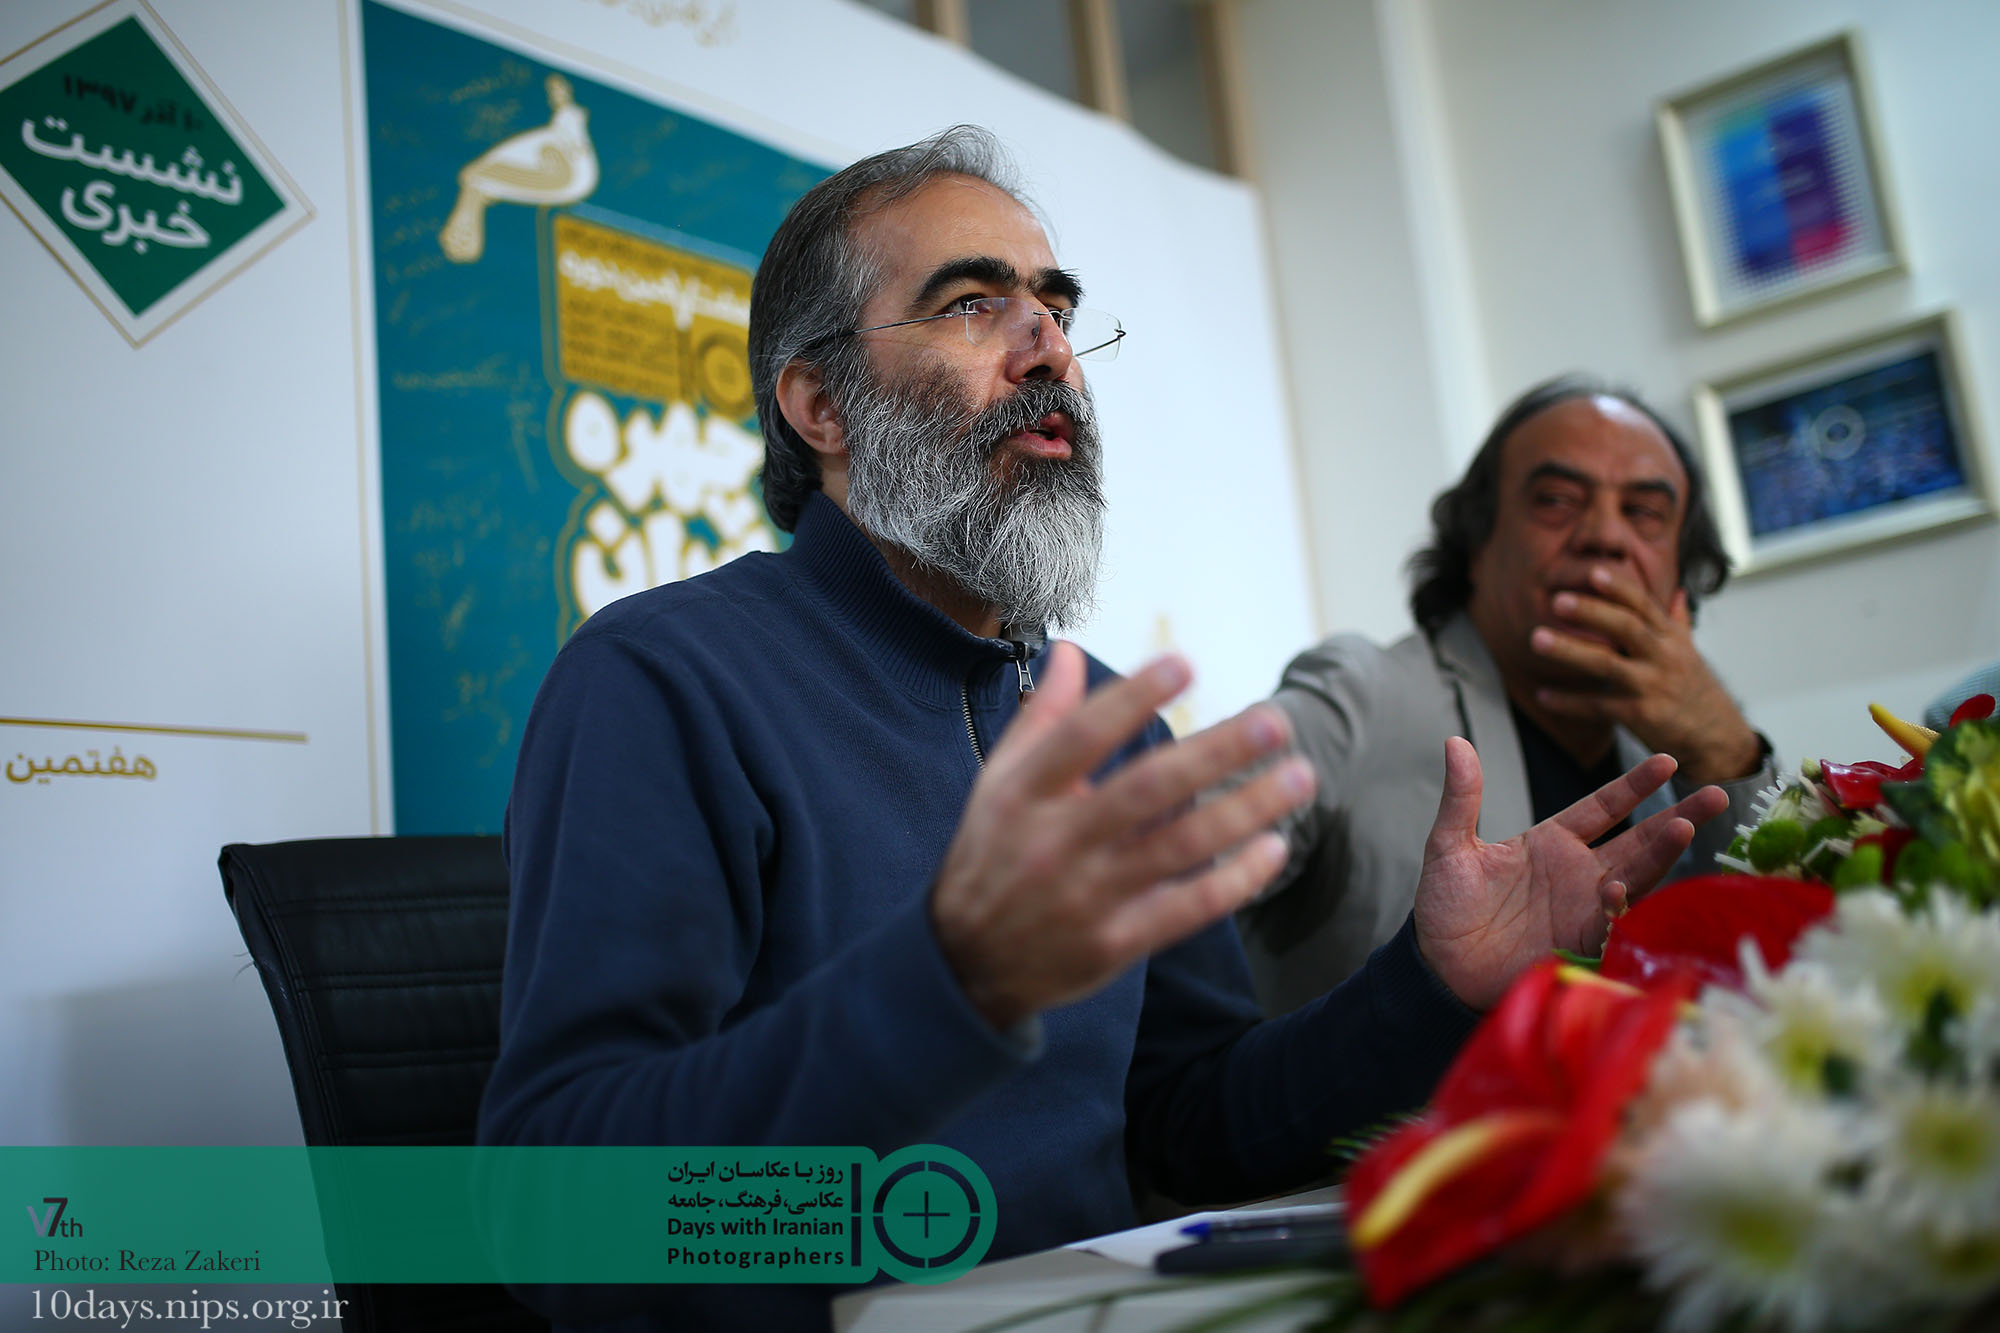 نشست خبری هفتمین دوره همایش ده روز با عکاسان ایران